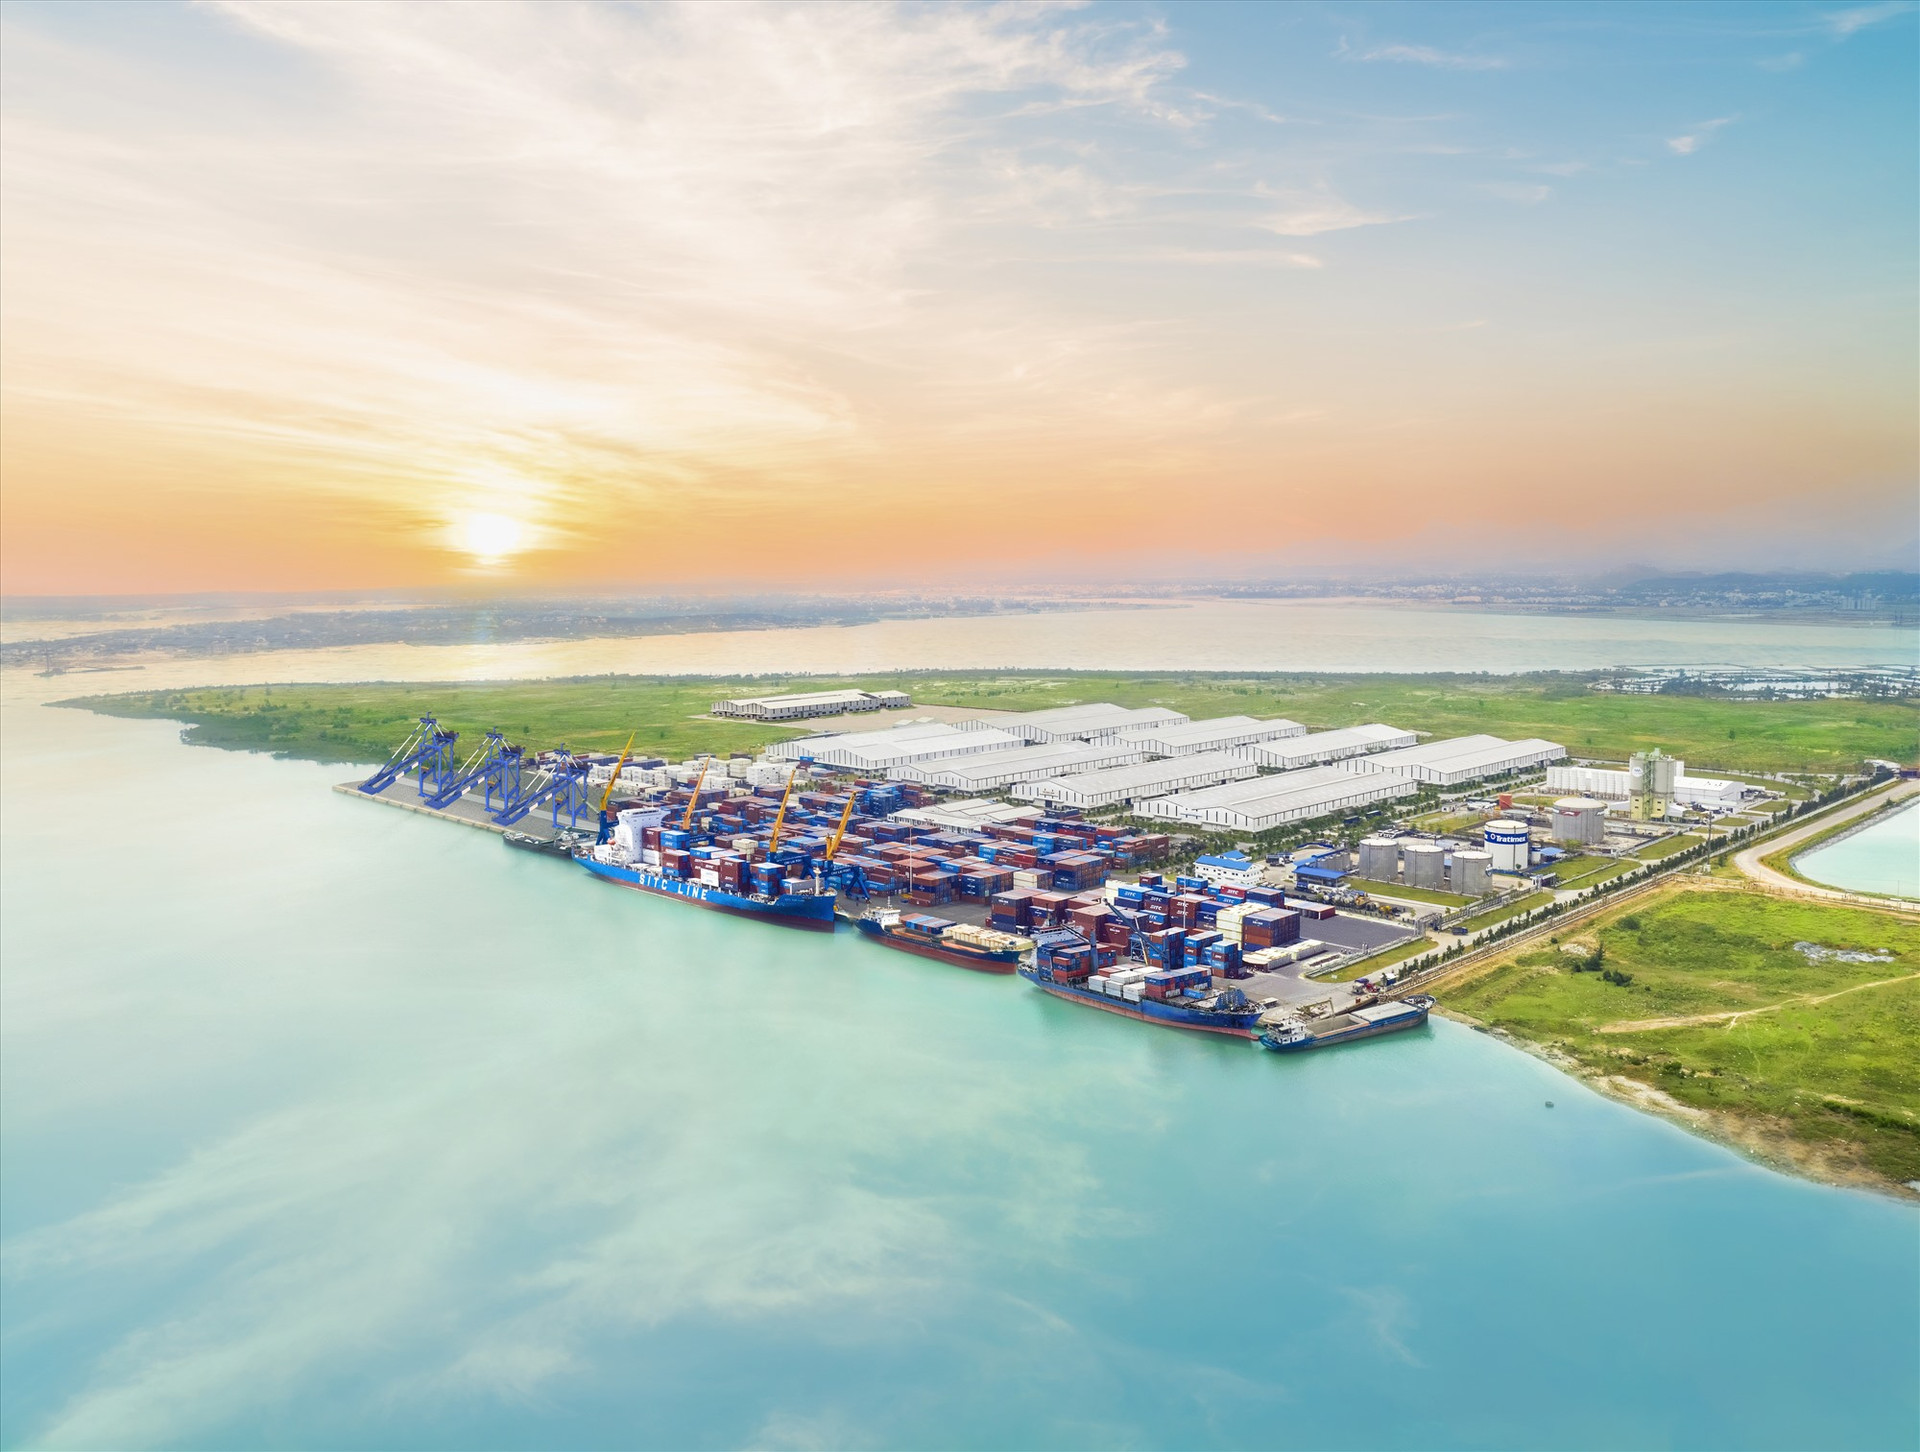 Cảng Chu Lai (Quảng Nam) – cửa ngõ kết nối giao thương hàng hóa xuất nhập khẩu tại khu vực miền Trung, Tây Nguyên, nam Lào, Bắc Campuchia, Thái Lan với thế giới.